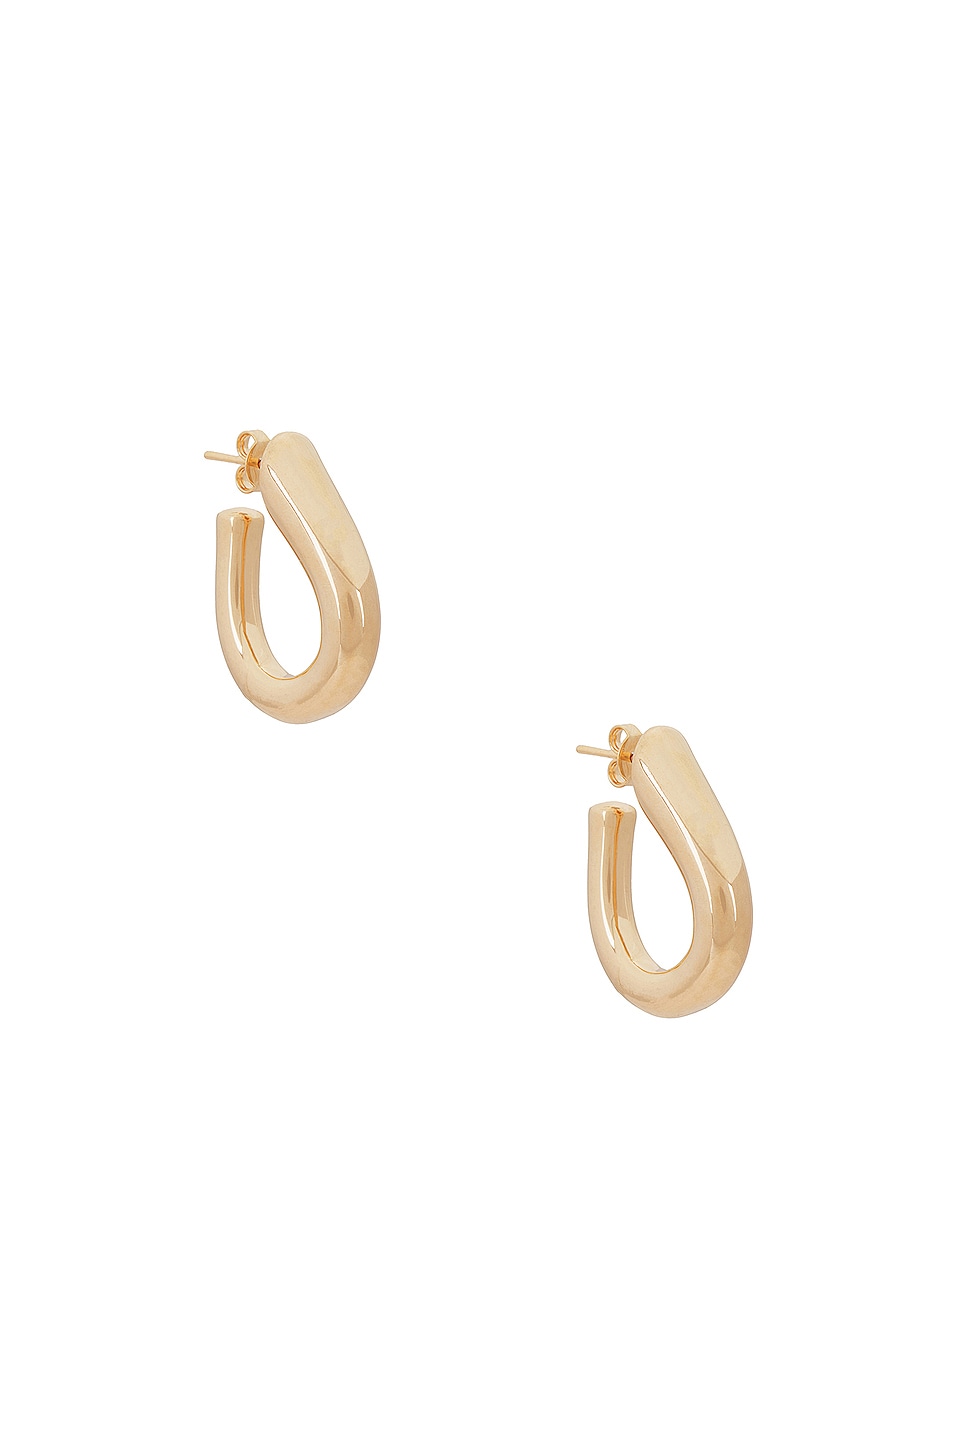 Image 1 of Jordan Road Jewelry Tear Drop Hoop Earrings in 18k Gold Filled